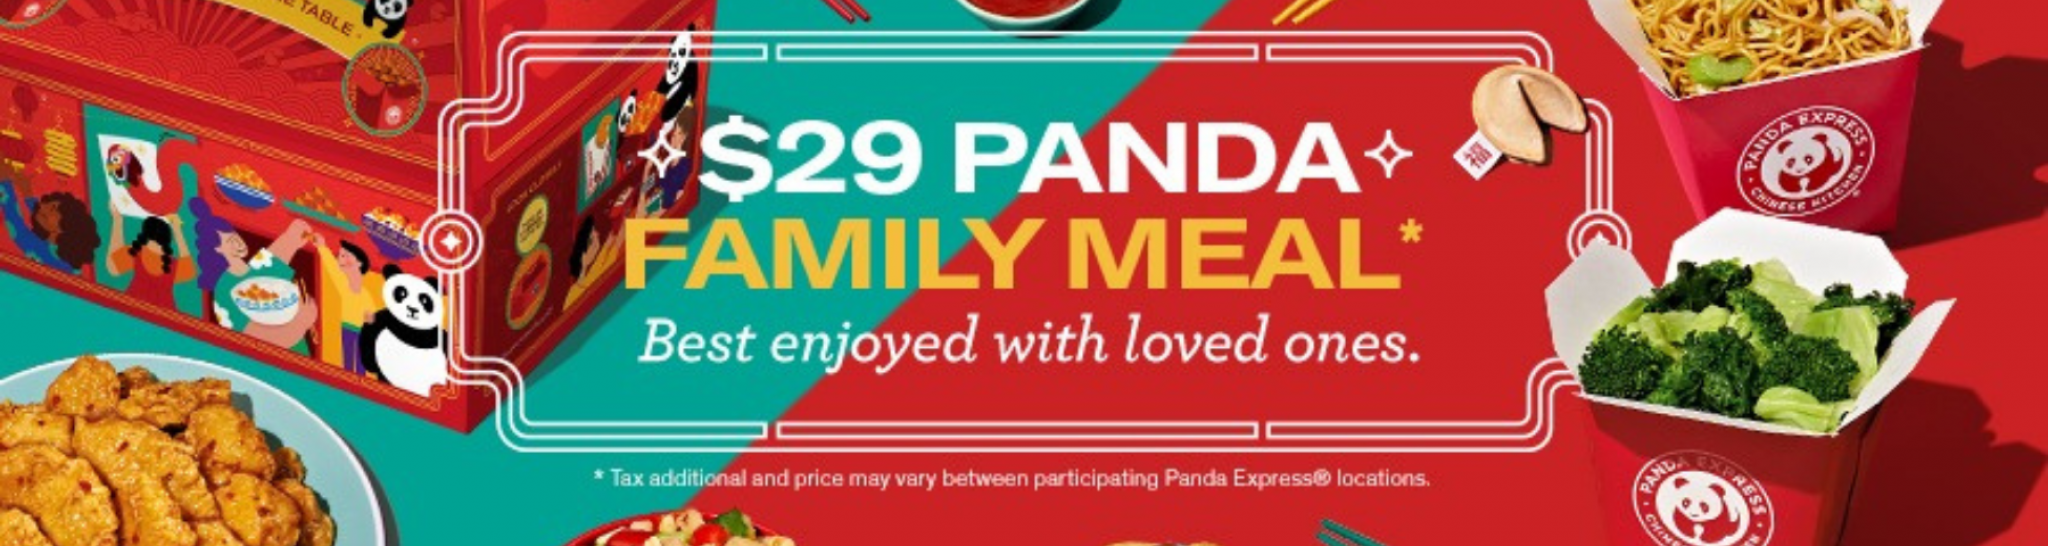 Panda Express Coupons For July Savewall